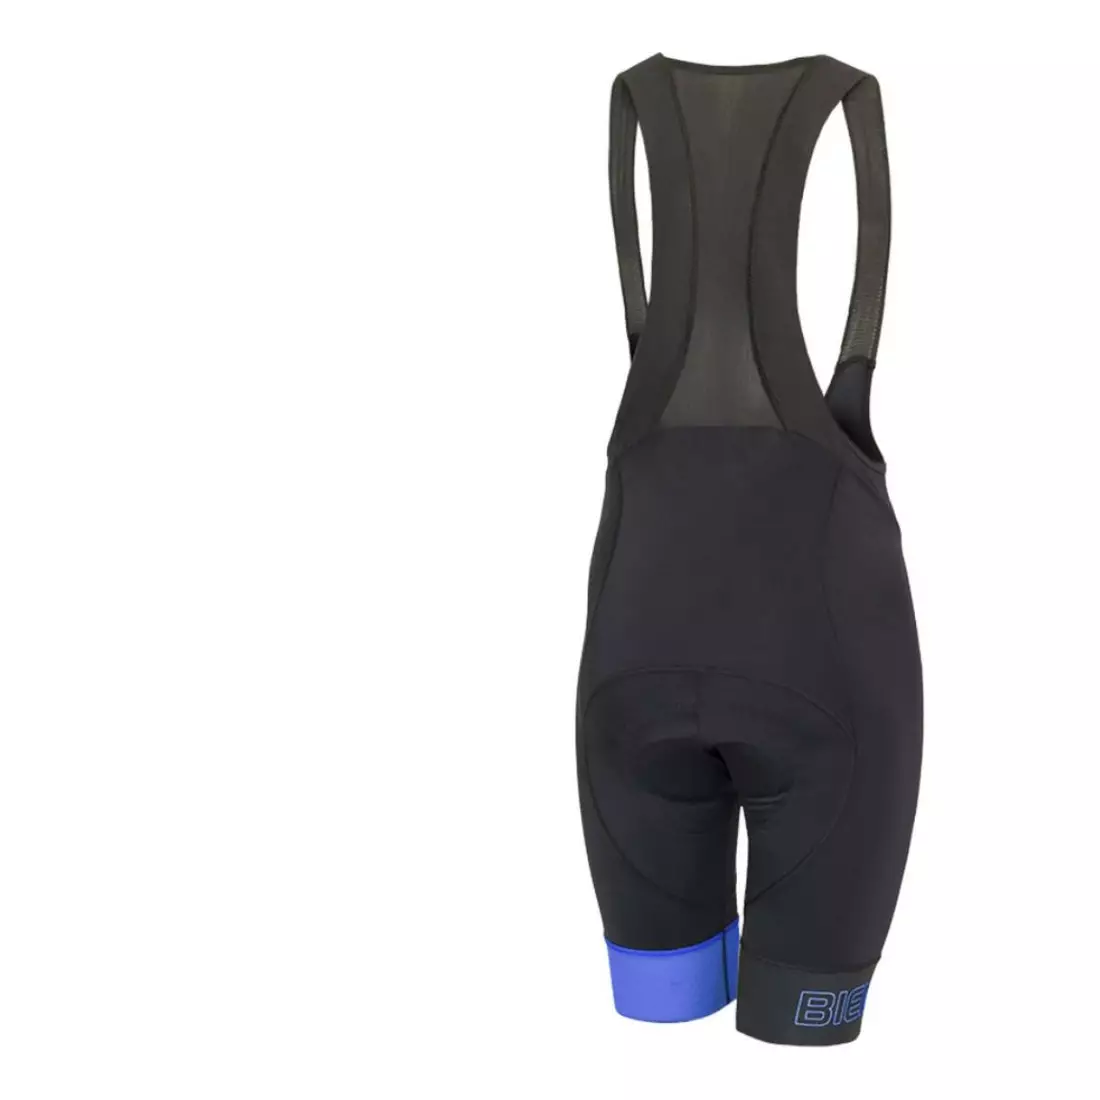 BIEMME men's cycling shorts with suspenders LEGEND ECO black blue